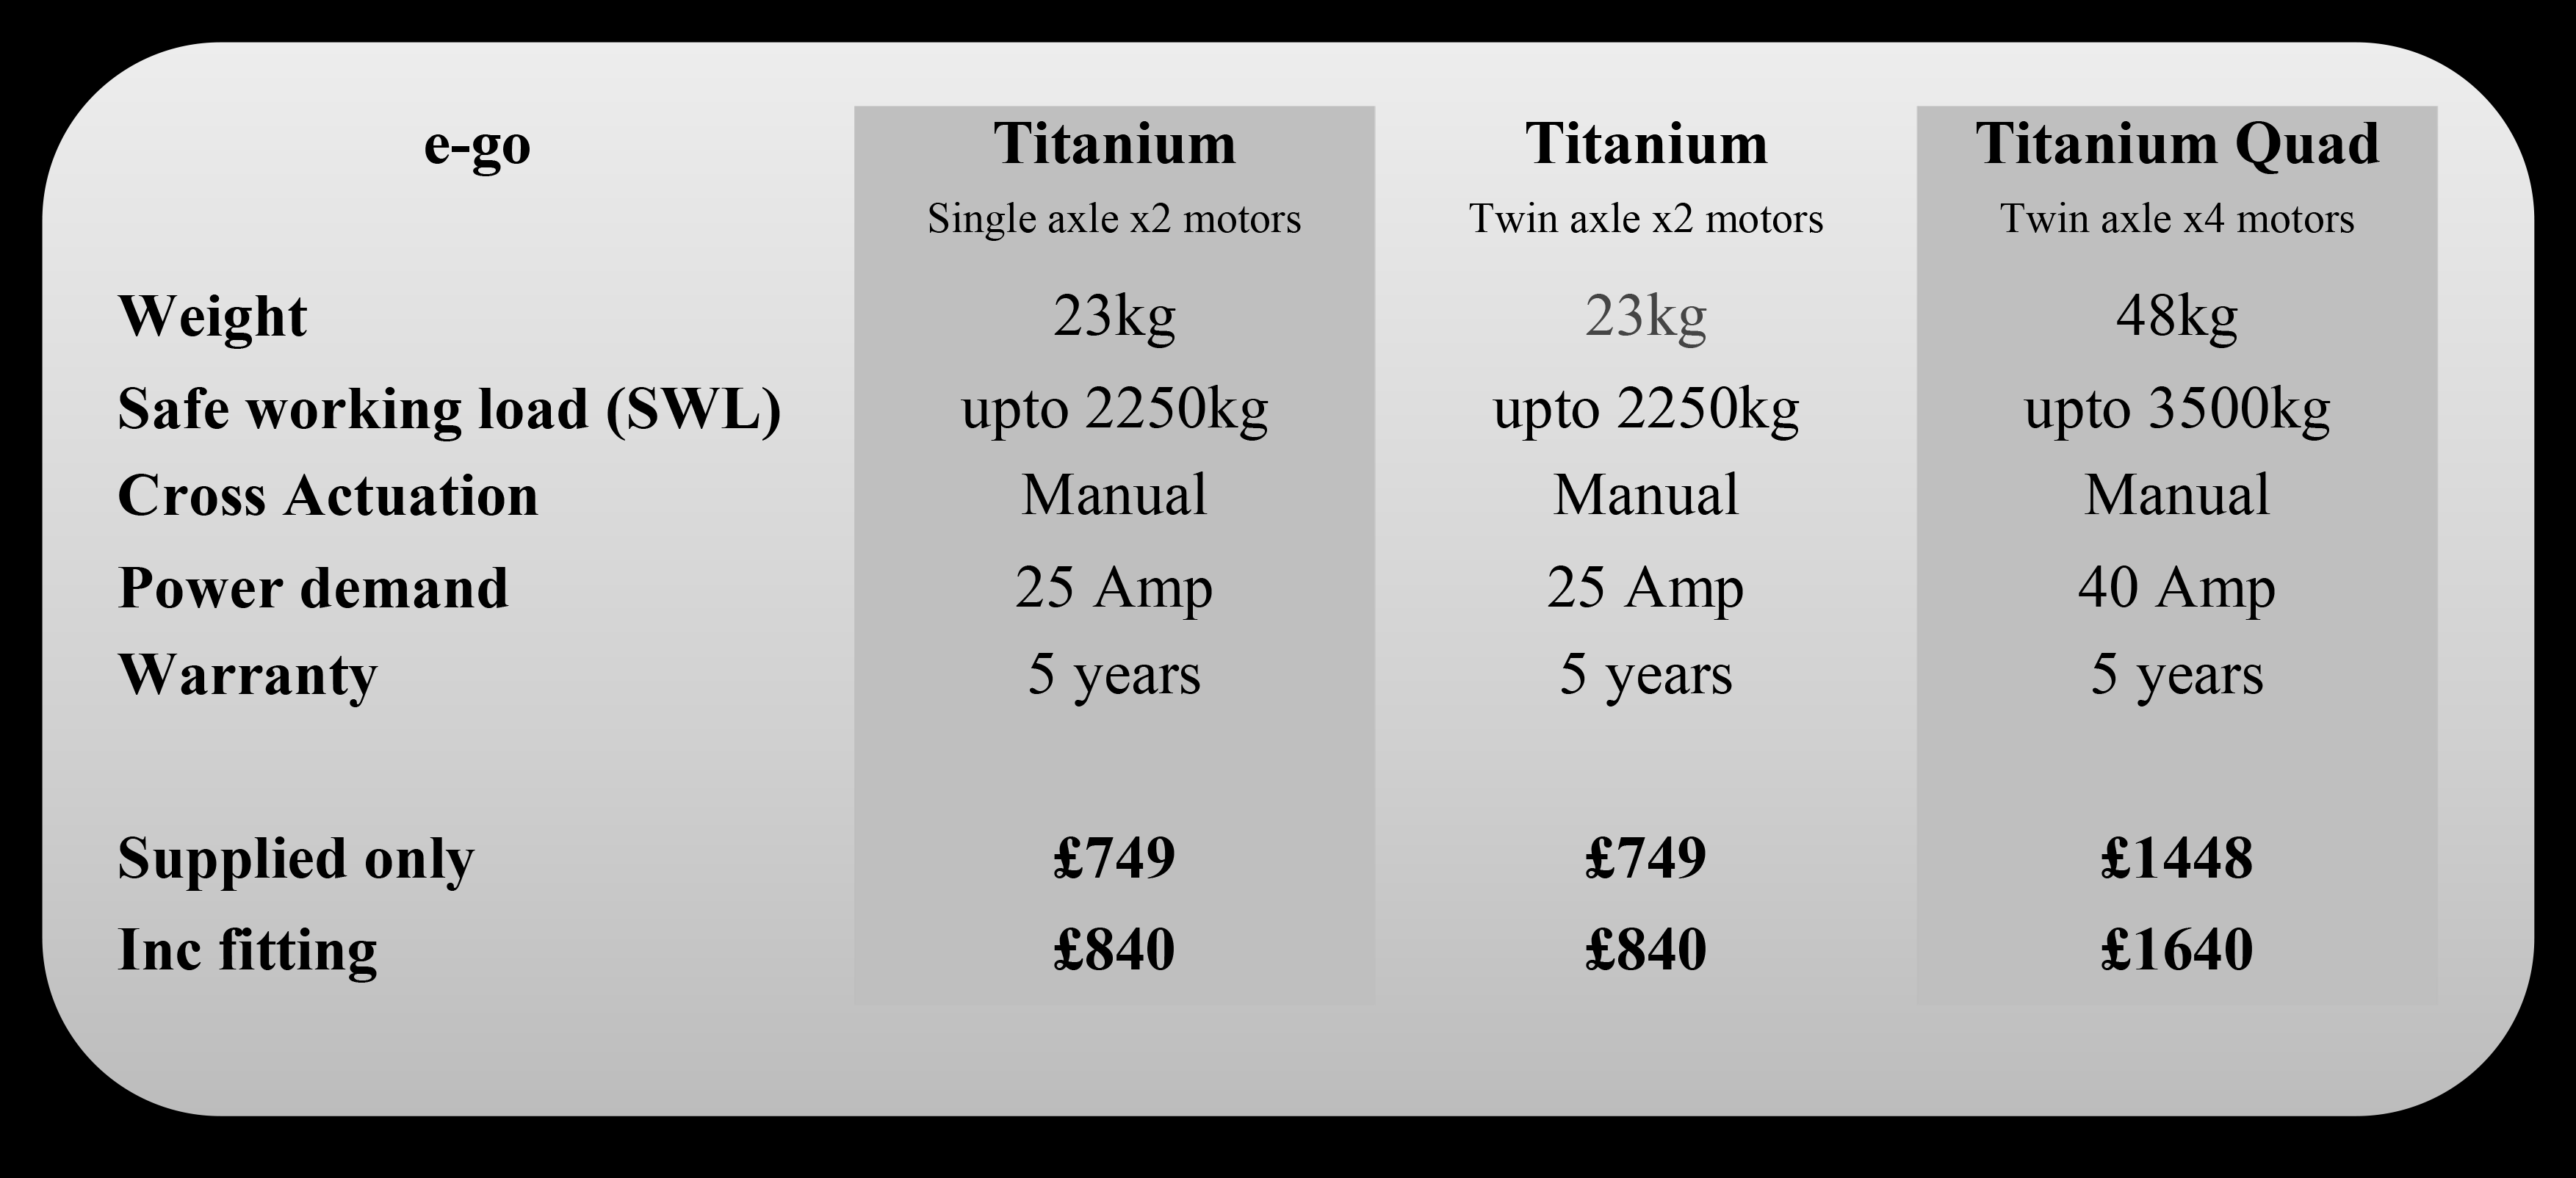 Purpleline e-go Titanium spec and prices